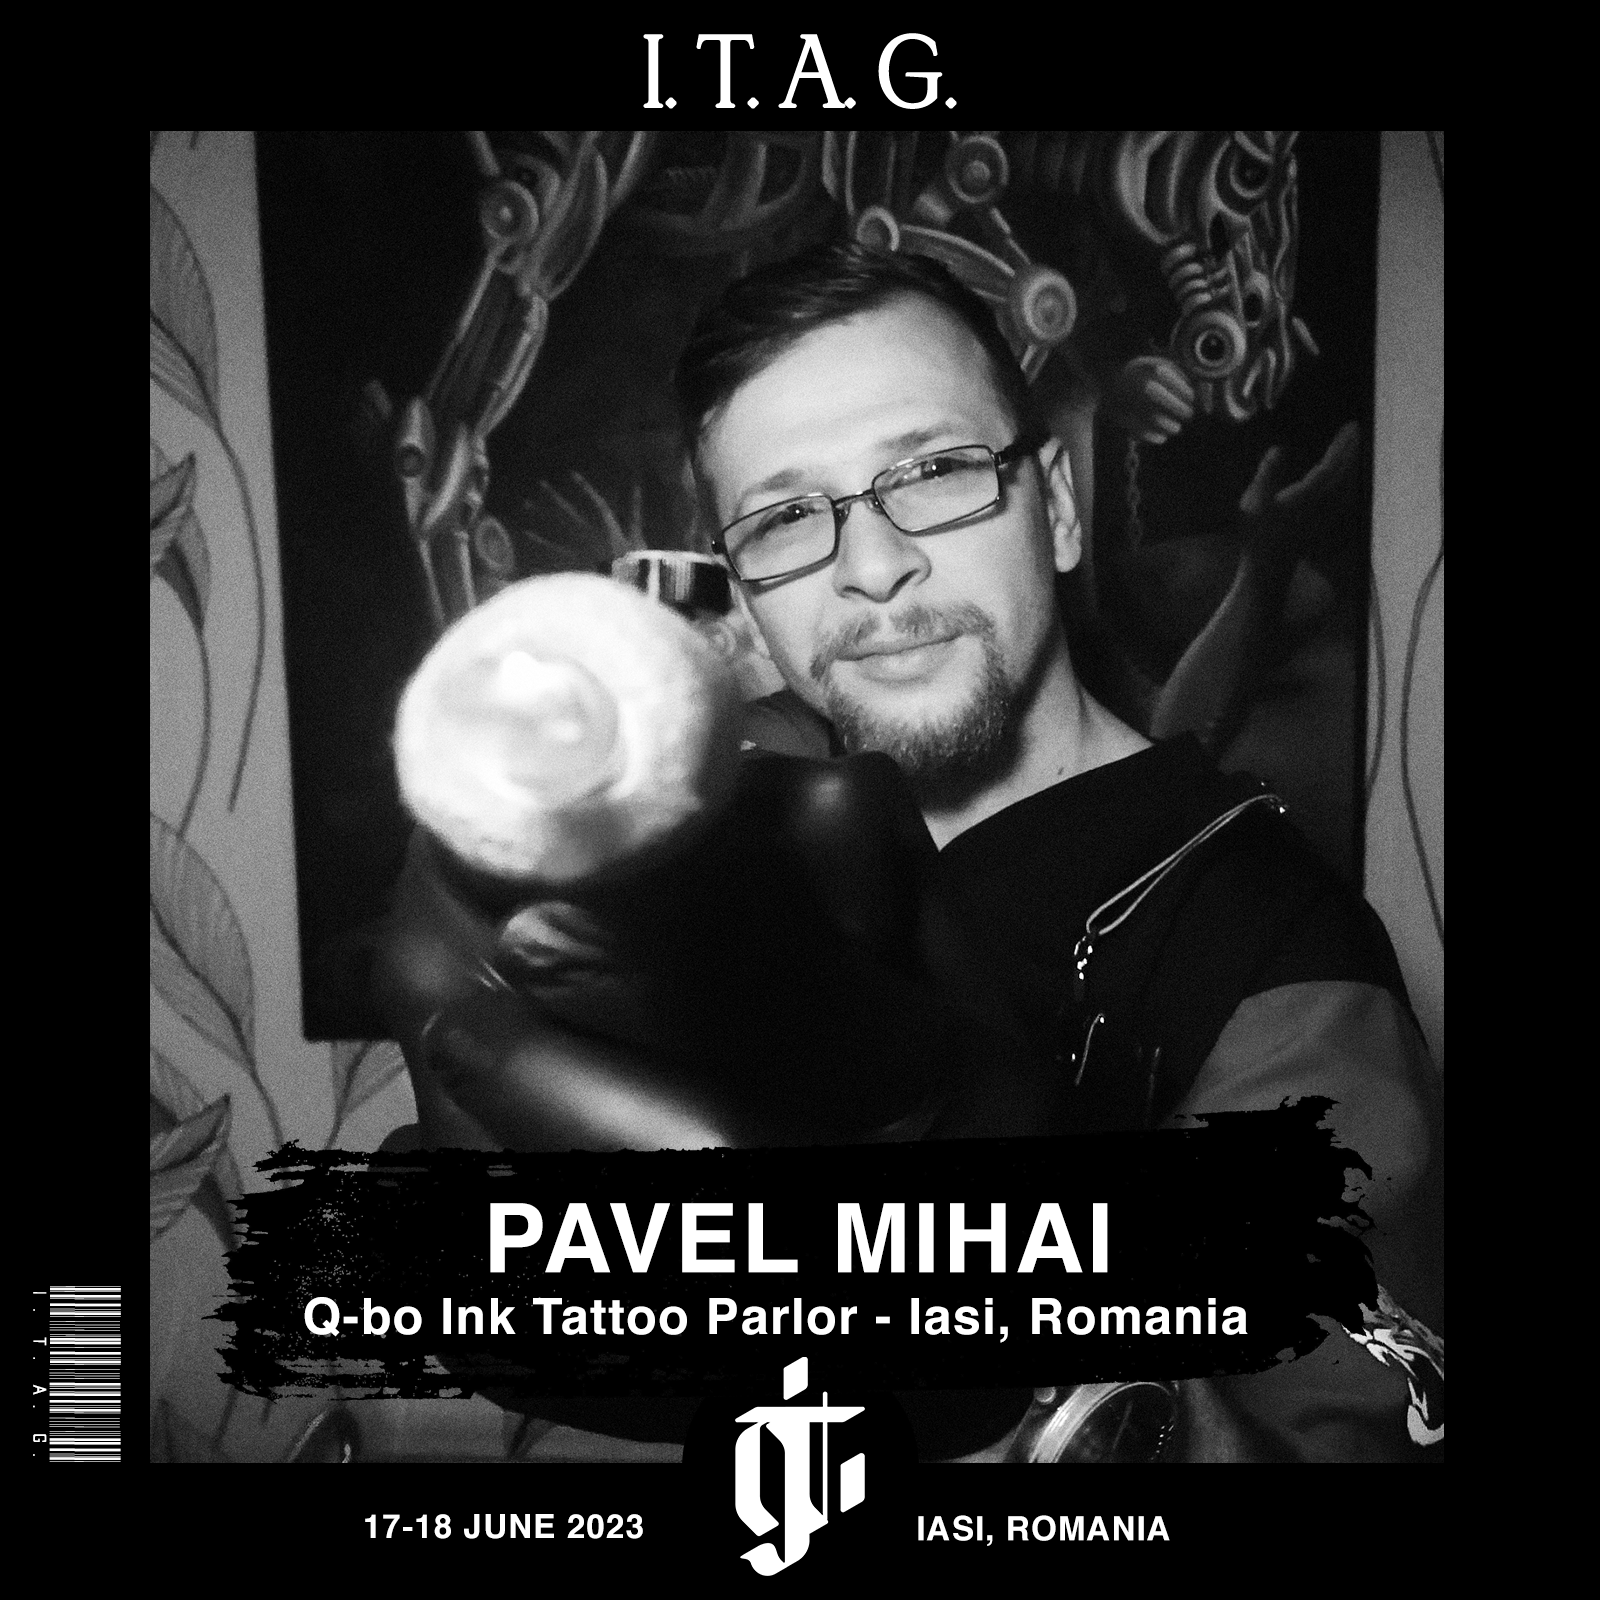 Pavel Mihai